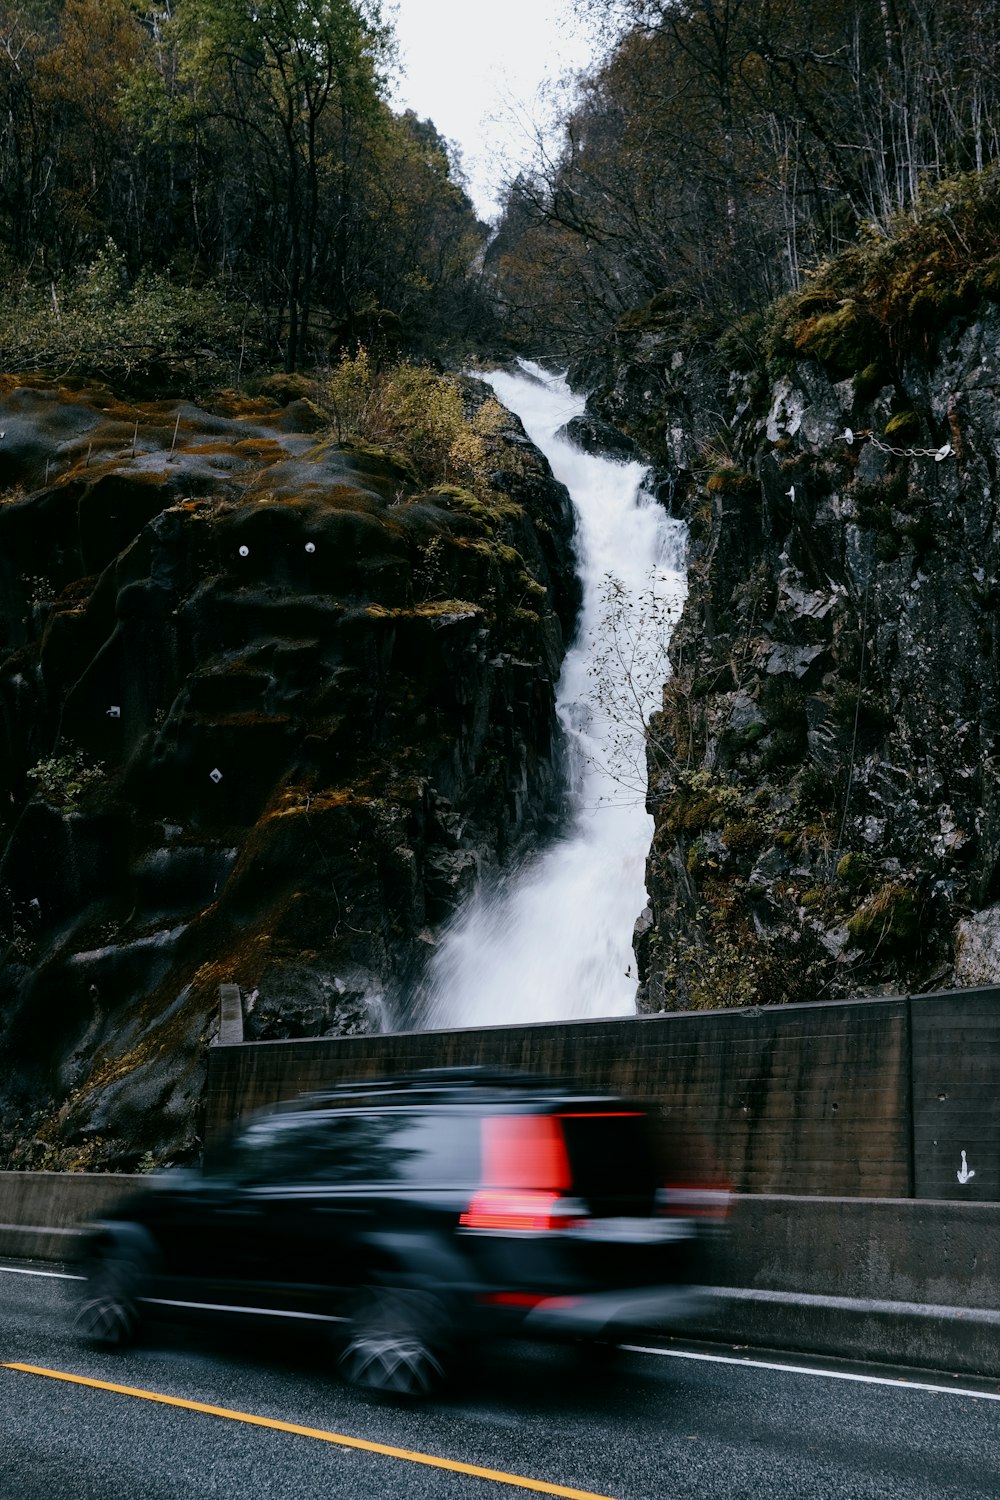 a car driving down a road near a waterfall